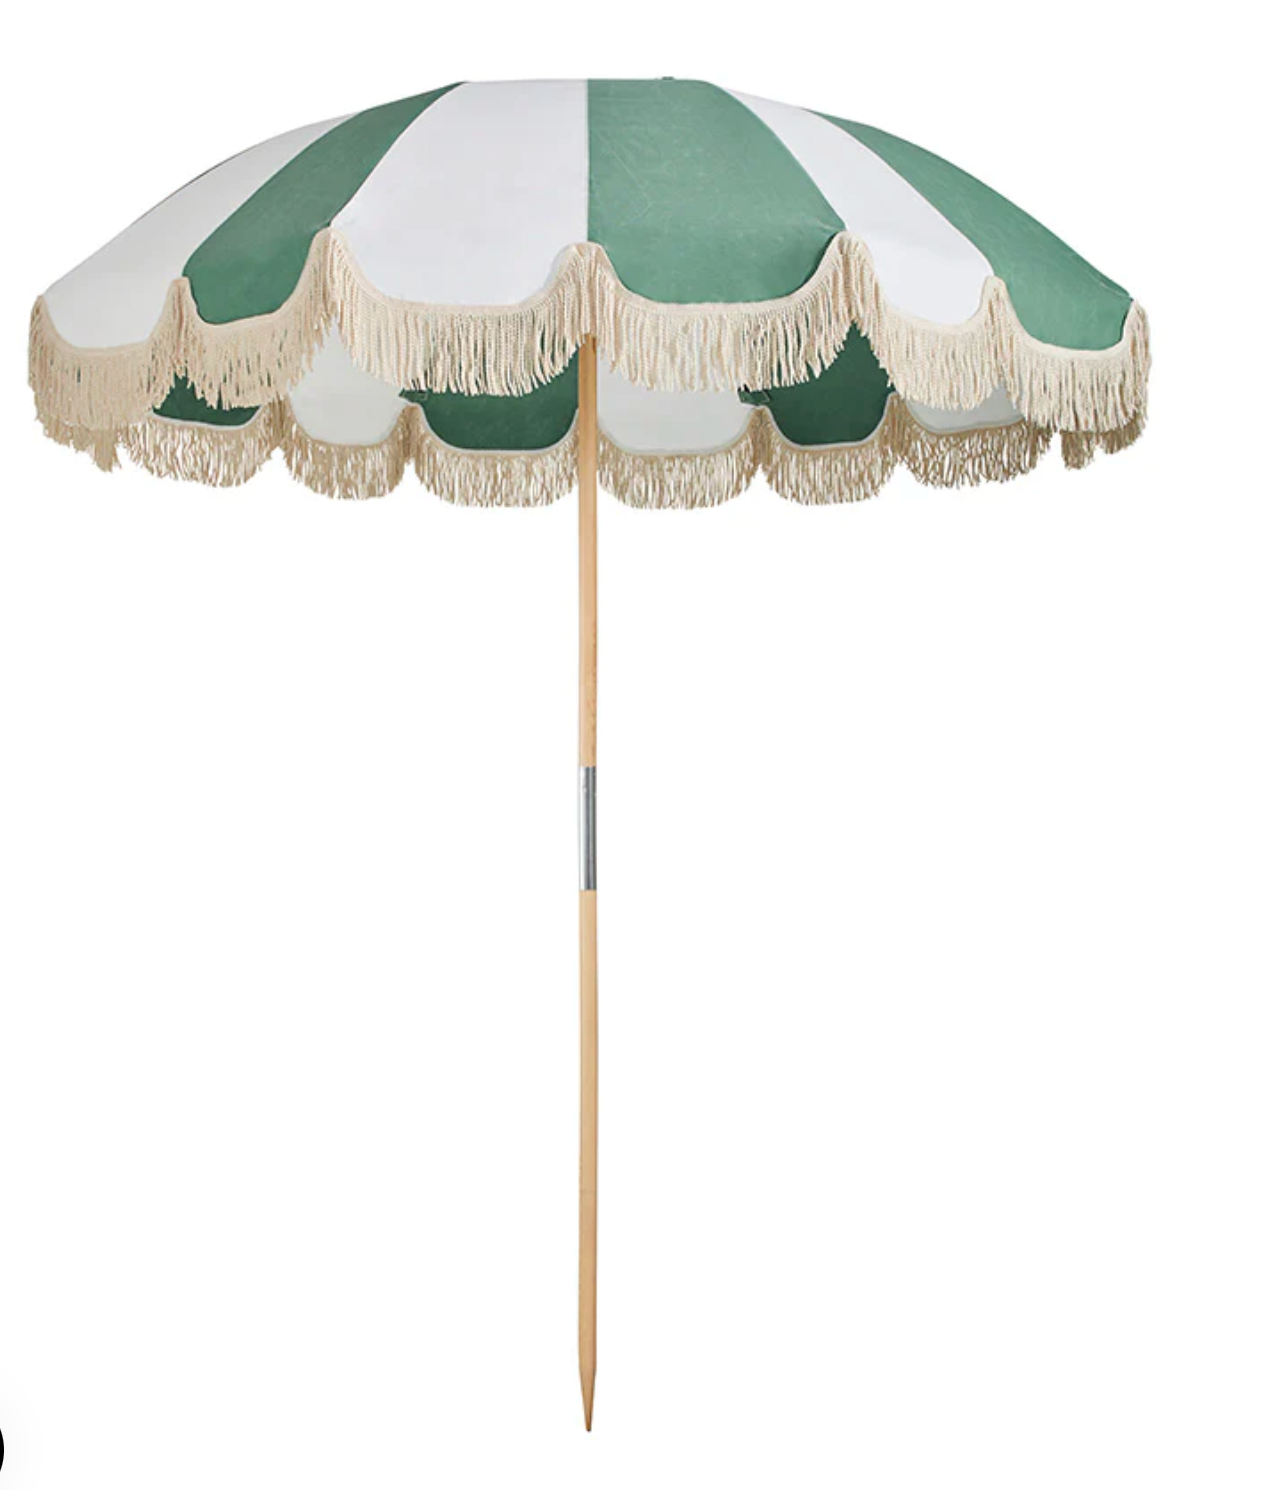 Basil Bangs Jardin Umbrella